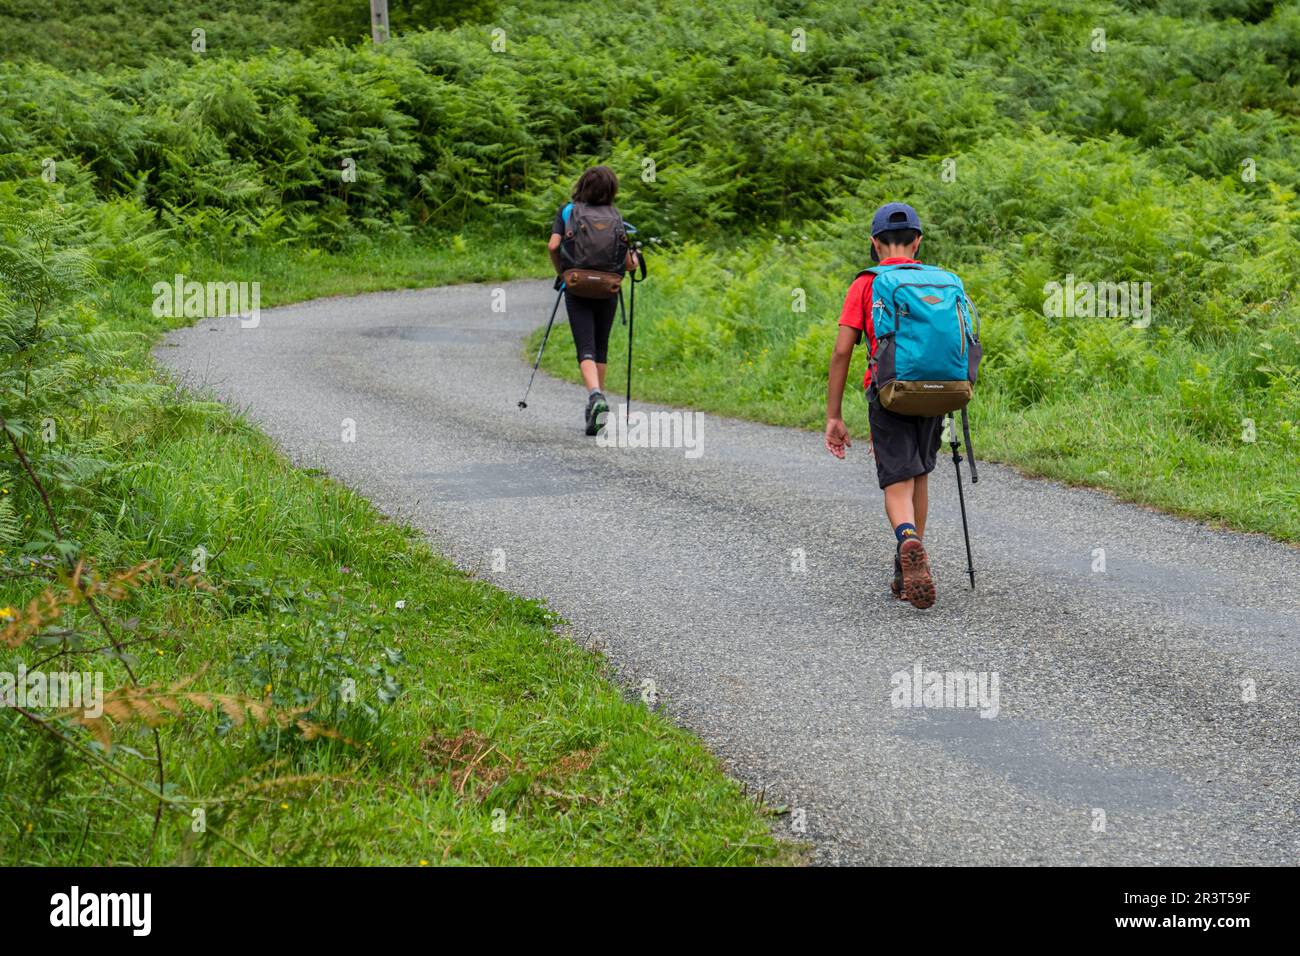 dos trekkers adolescentes, Lescun, región de Aquitania, departamento de Pirineos Atlánticos, Francia. Stock Photo